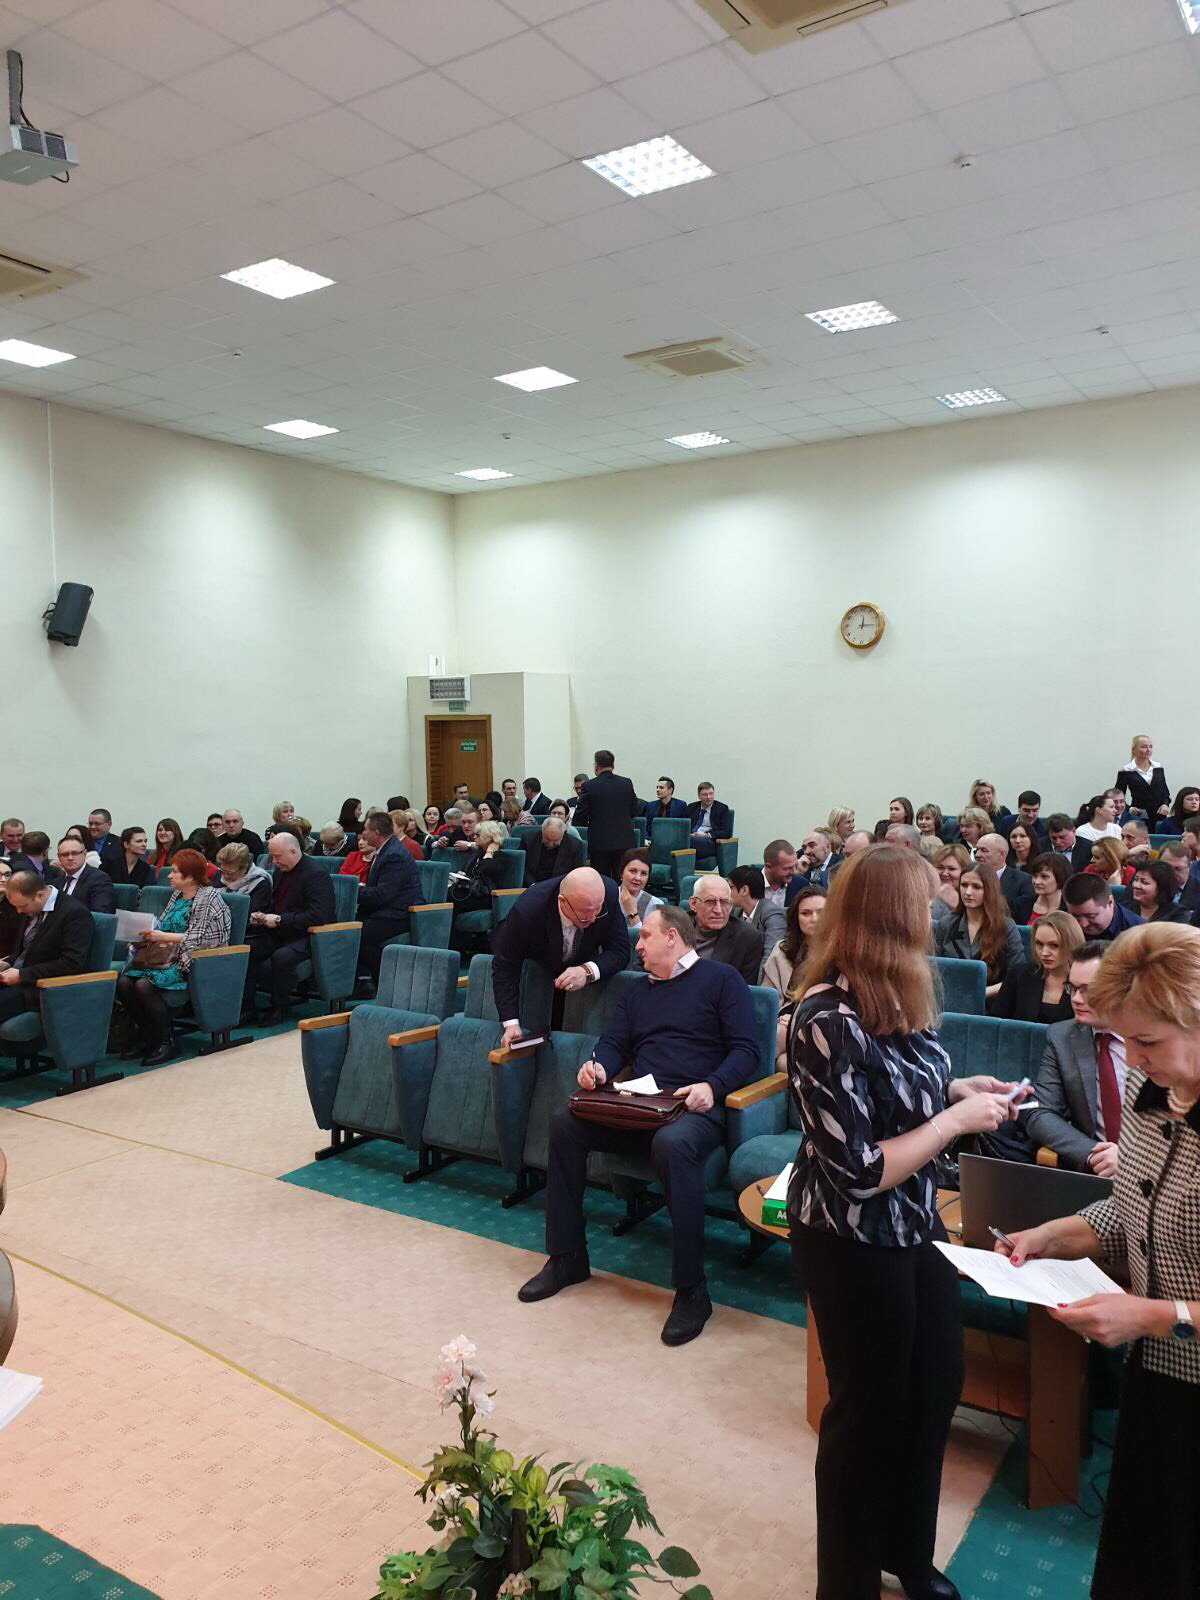 Отчетно-выборное собрание Могилевской областной коллегии адвокатов состоялось 18 января